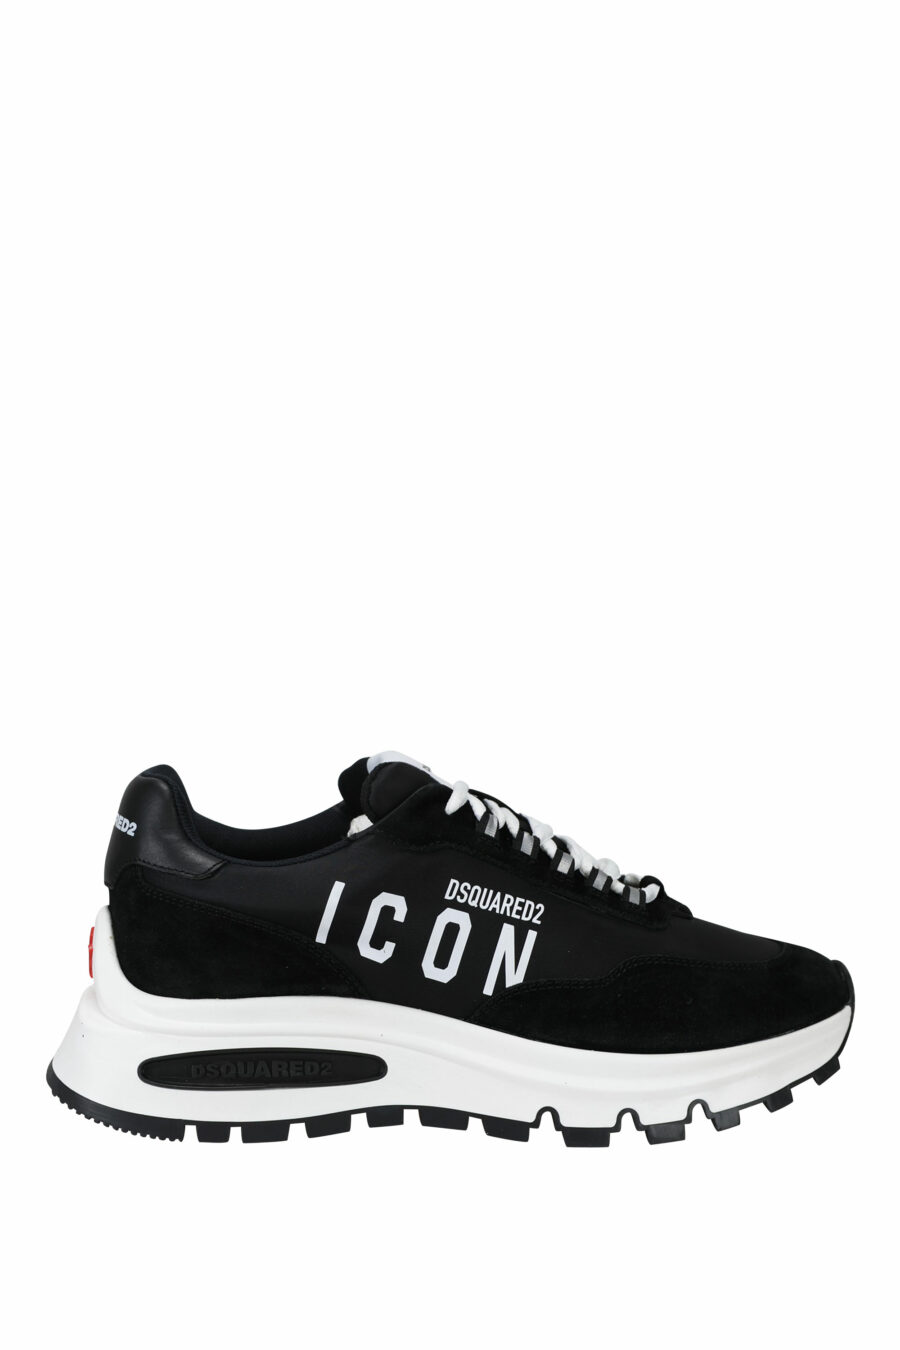 Sapatos pretos com mini-logotipo "icon" e sola branca com tubo interior - 8055777249321